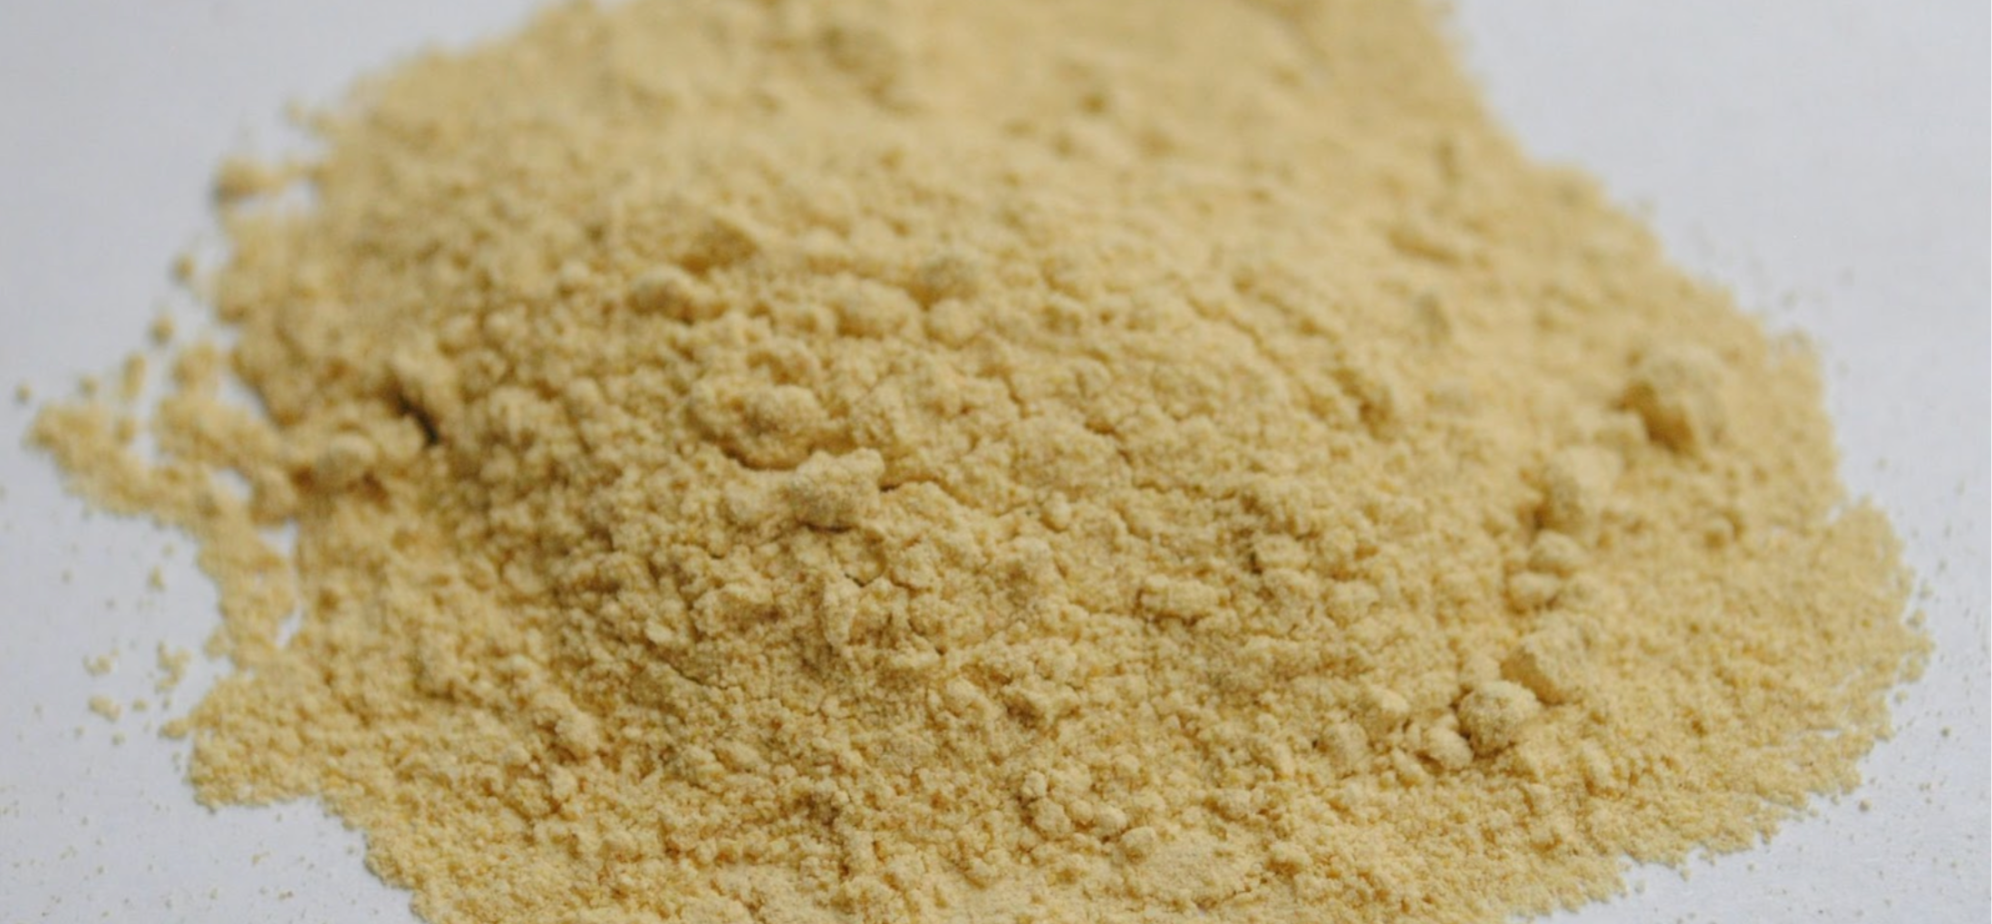 Pile of pale ashwagandha powder